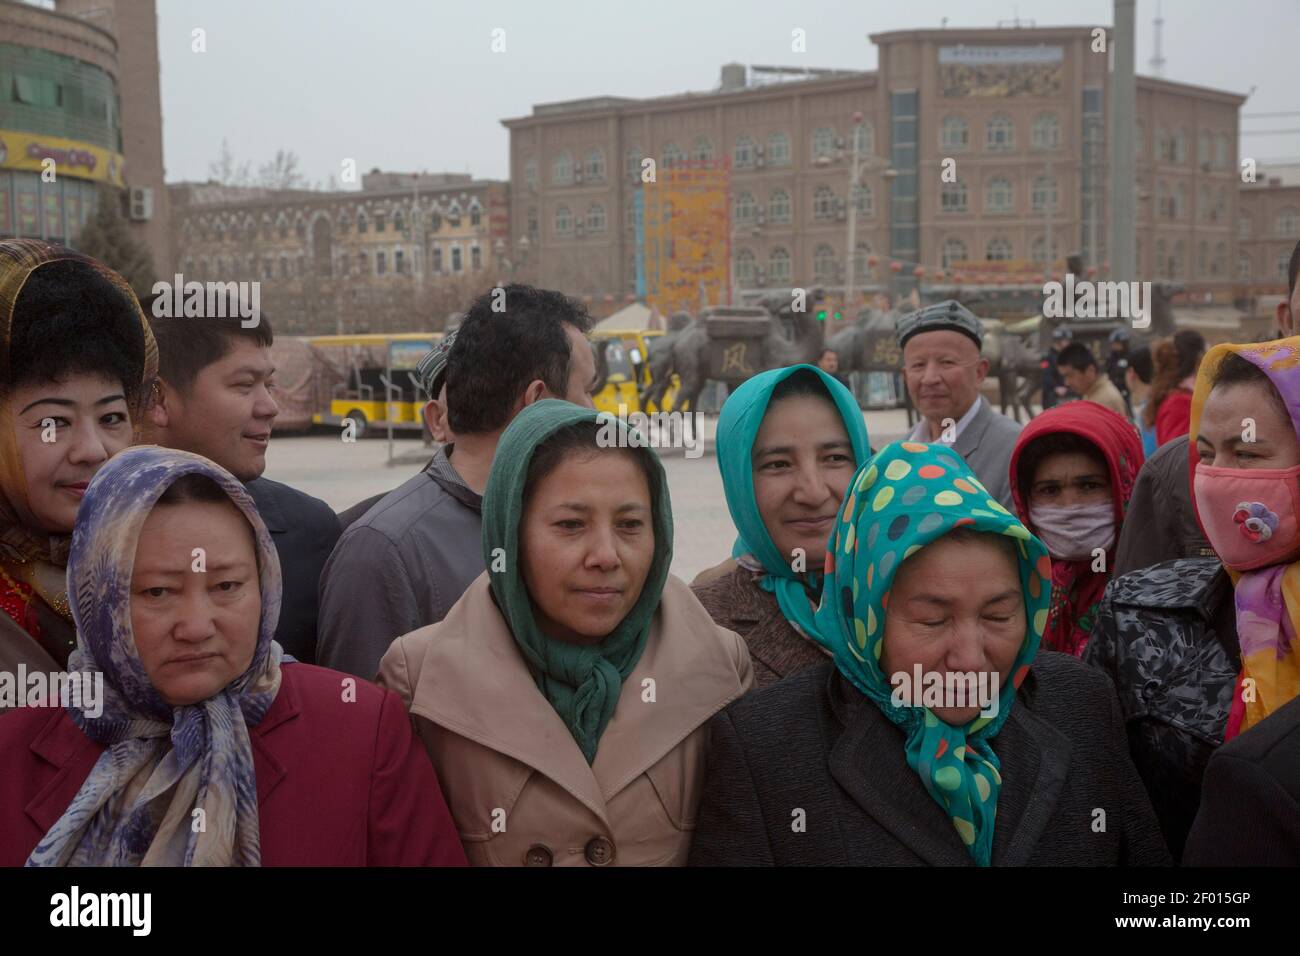 Kashgar, Cina. 19 marzo 2016 Uyghur gente nella piazza centrale della città vecchia di Kashgar, nella provincia di Xinjiang, in Cina Foto Stock